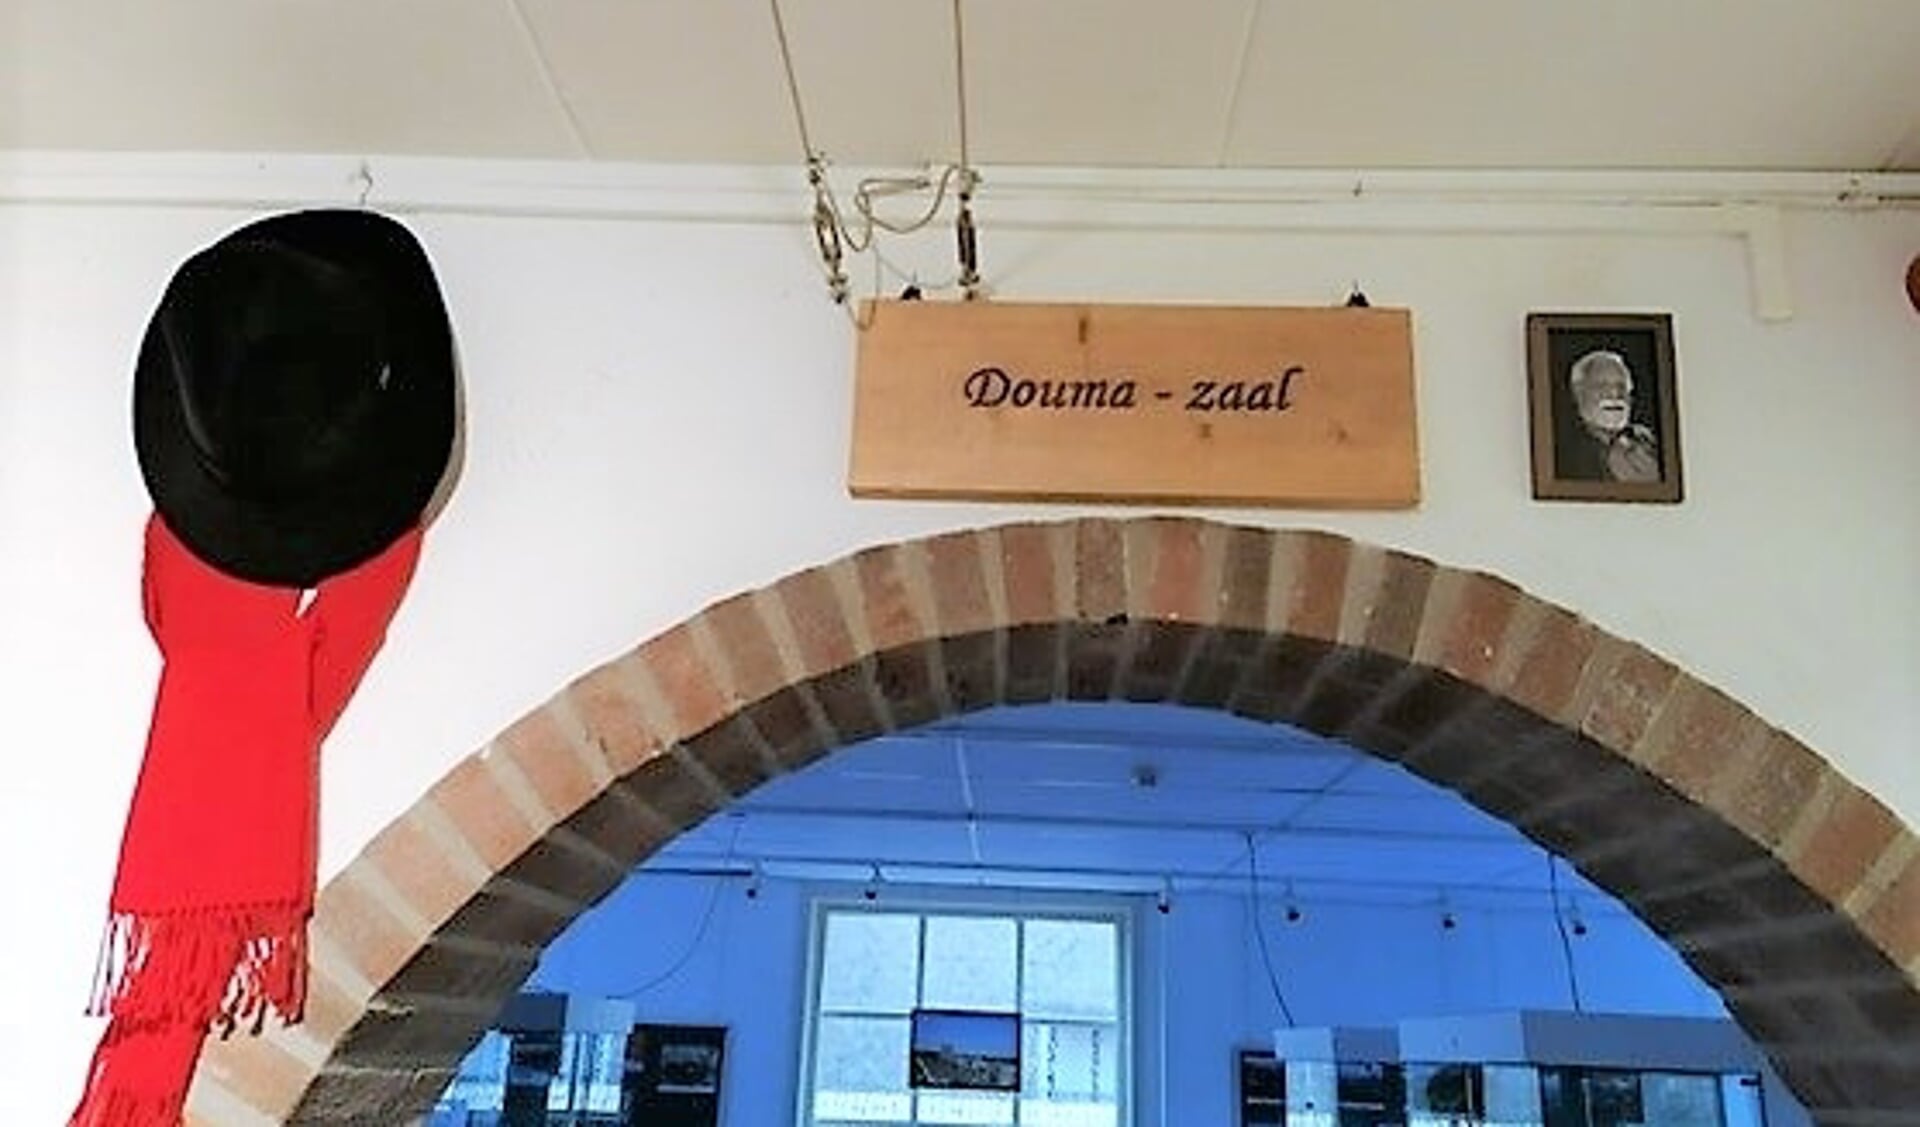 De hoed en sjaal van Marten Douma in de Douma-zaal